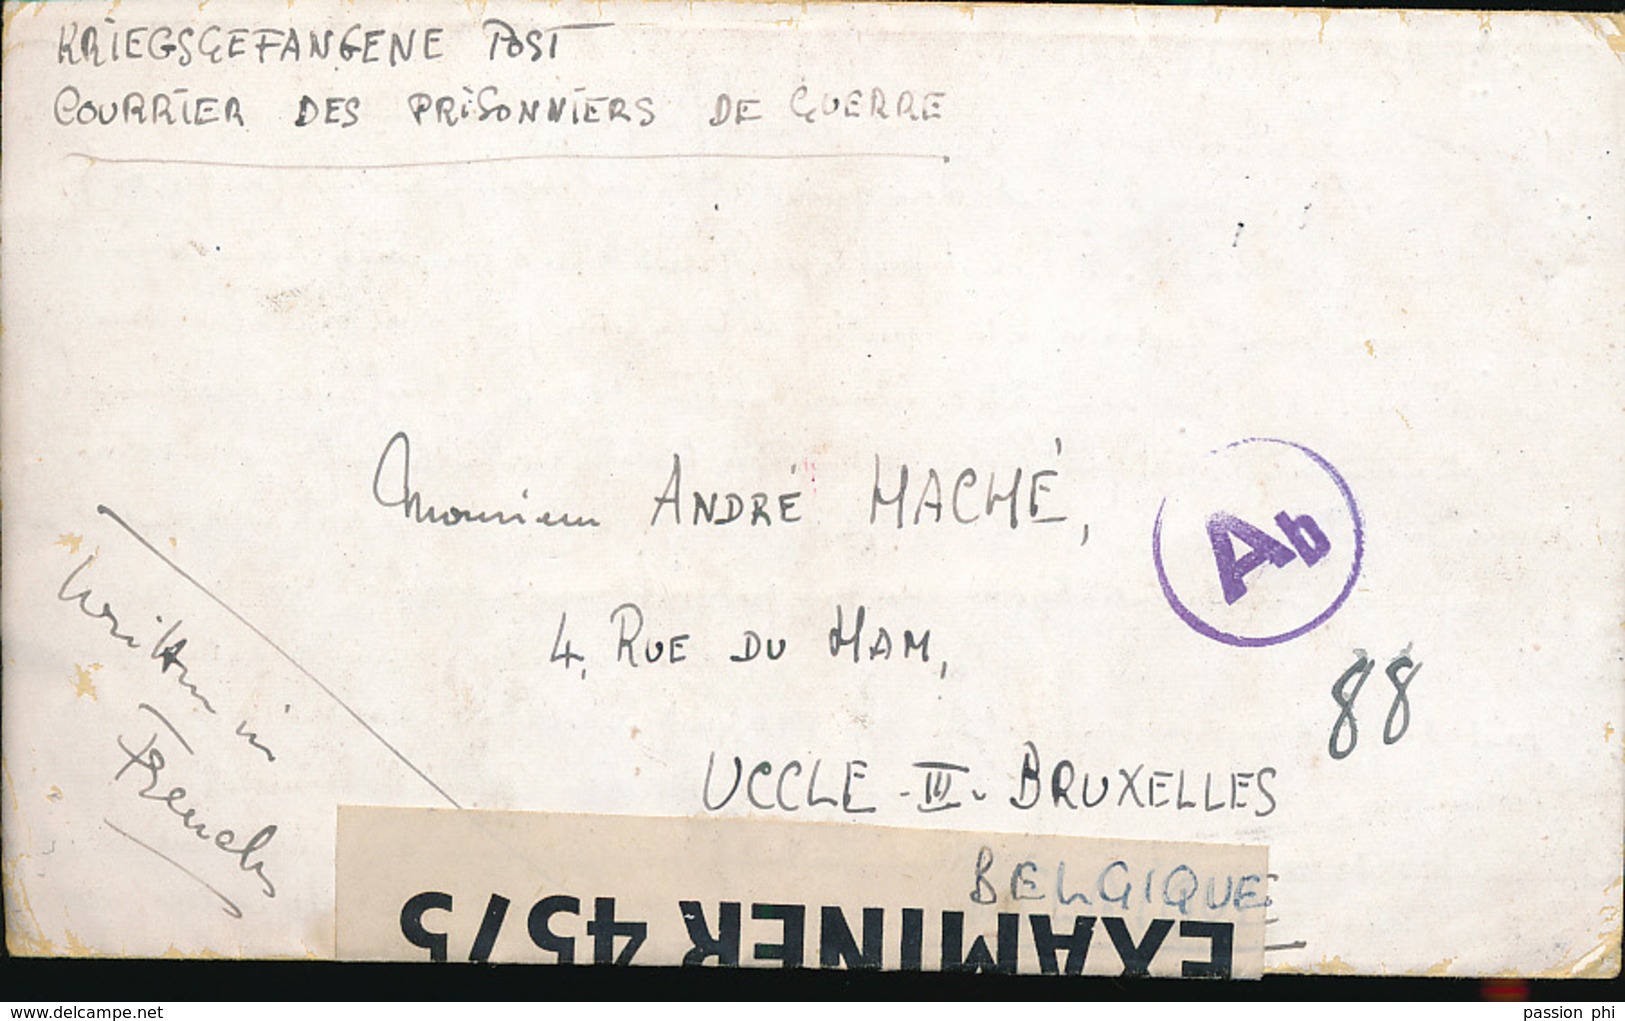 ISLE OF MAN BELGIQUE LETTRE D'UN DES CAMPS DE PRISONNIERS DE L'ILES DE MAN"CAMP X PEEL" VERS LA BELGIQUE AR. 23.09.1943 - Guerre 40-45 (Lettres & Documents)